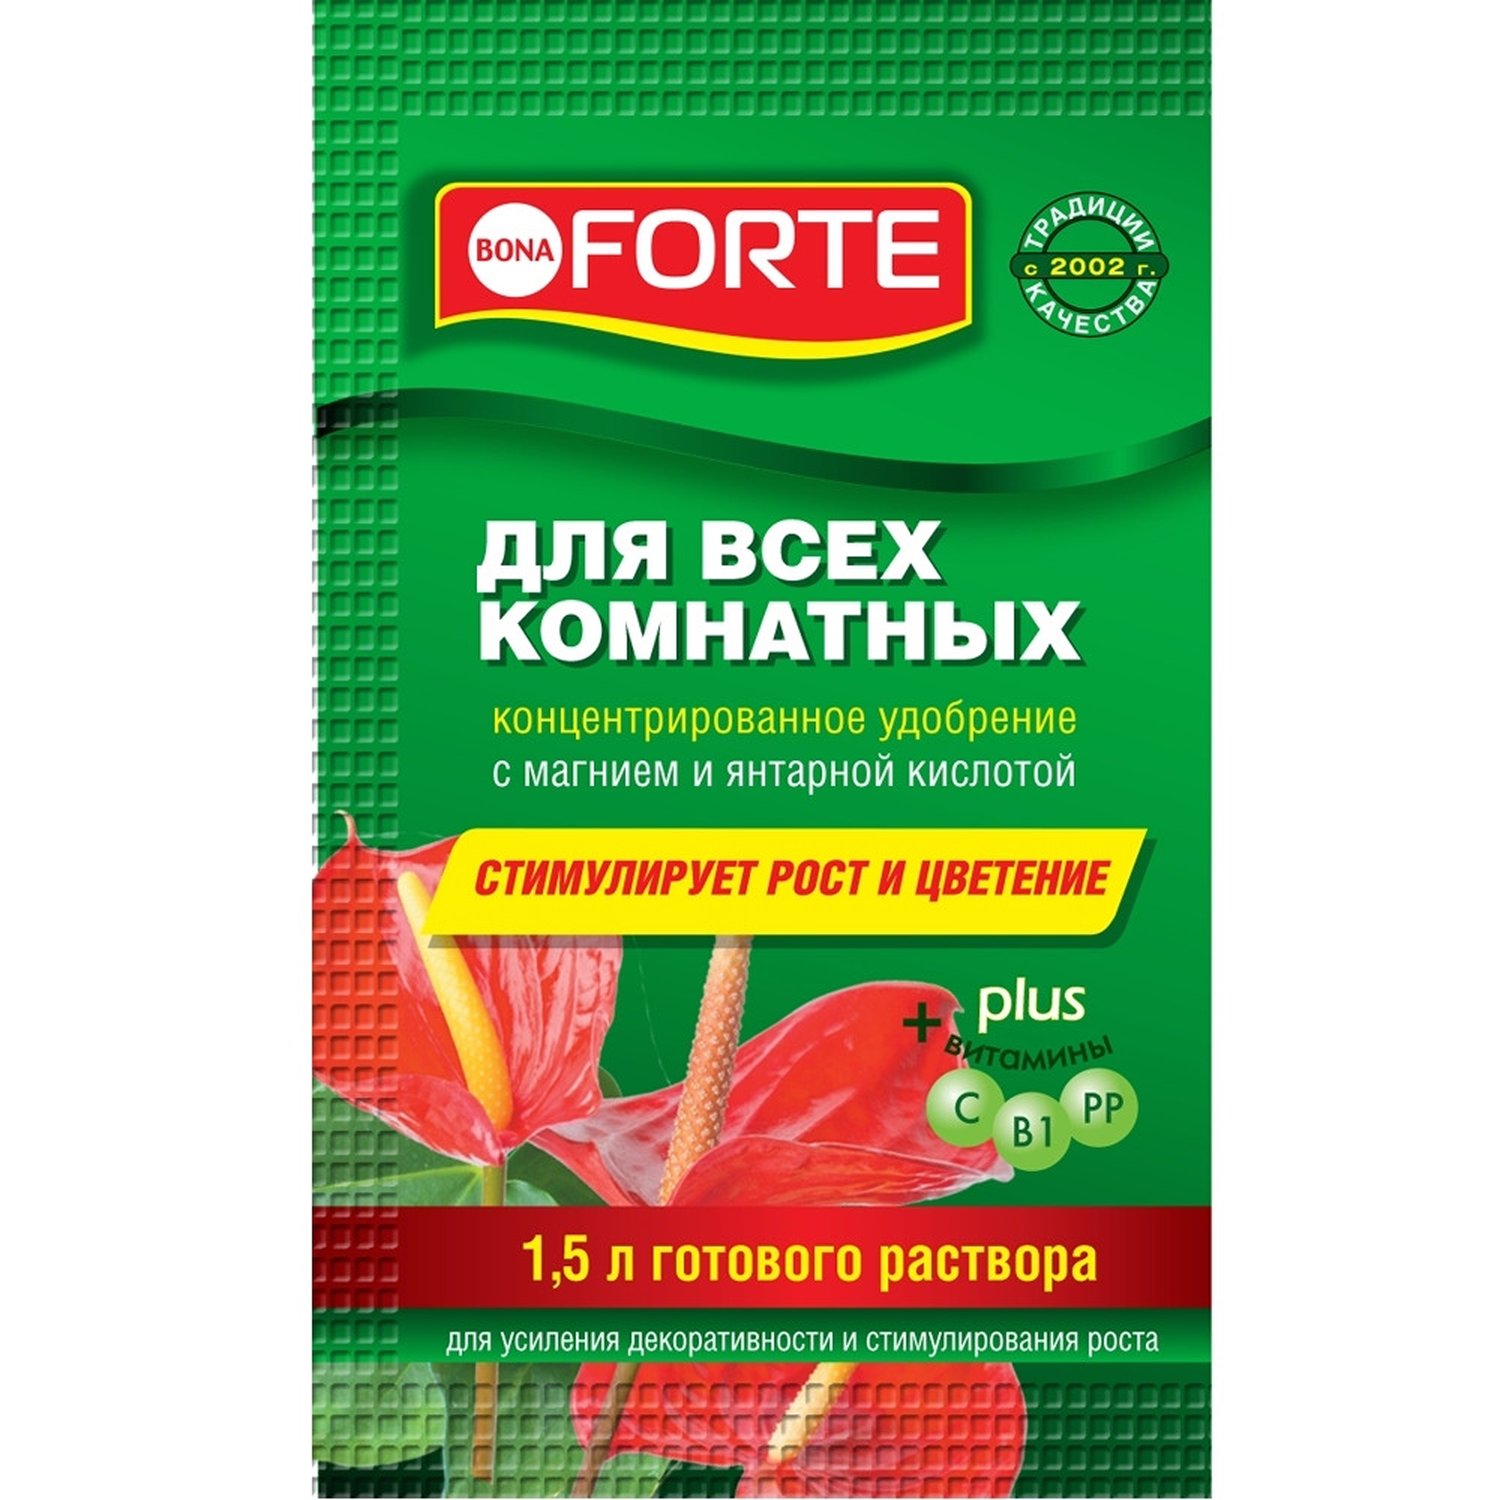 Удобрение Bona Forte для всех комнатных растений серия Красота, 10 мл